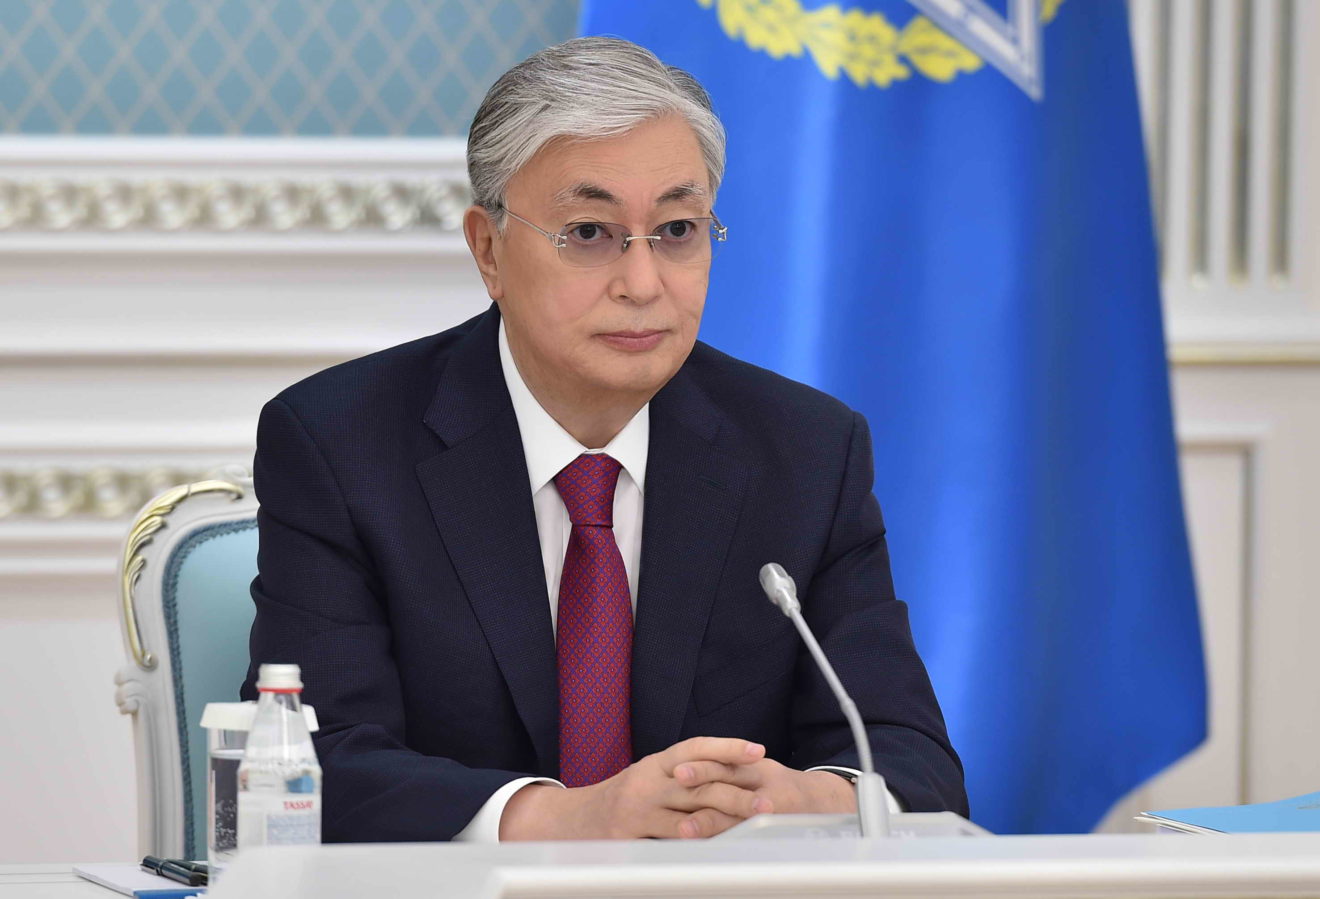 Казахстан полон решимости провести справедливые, прозрачные парламентские выборы, заявляет президент страны